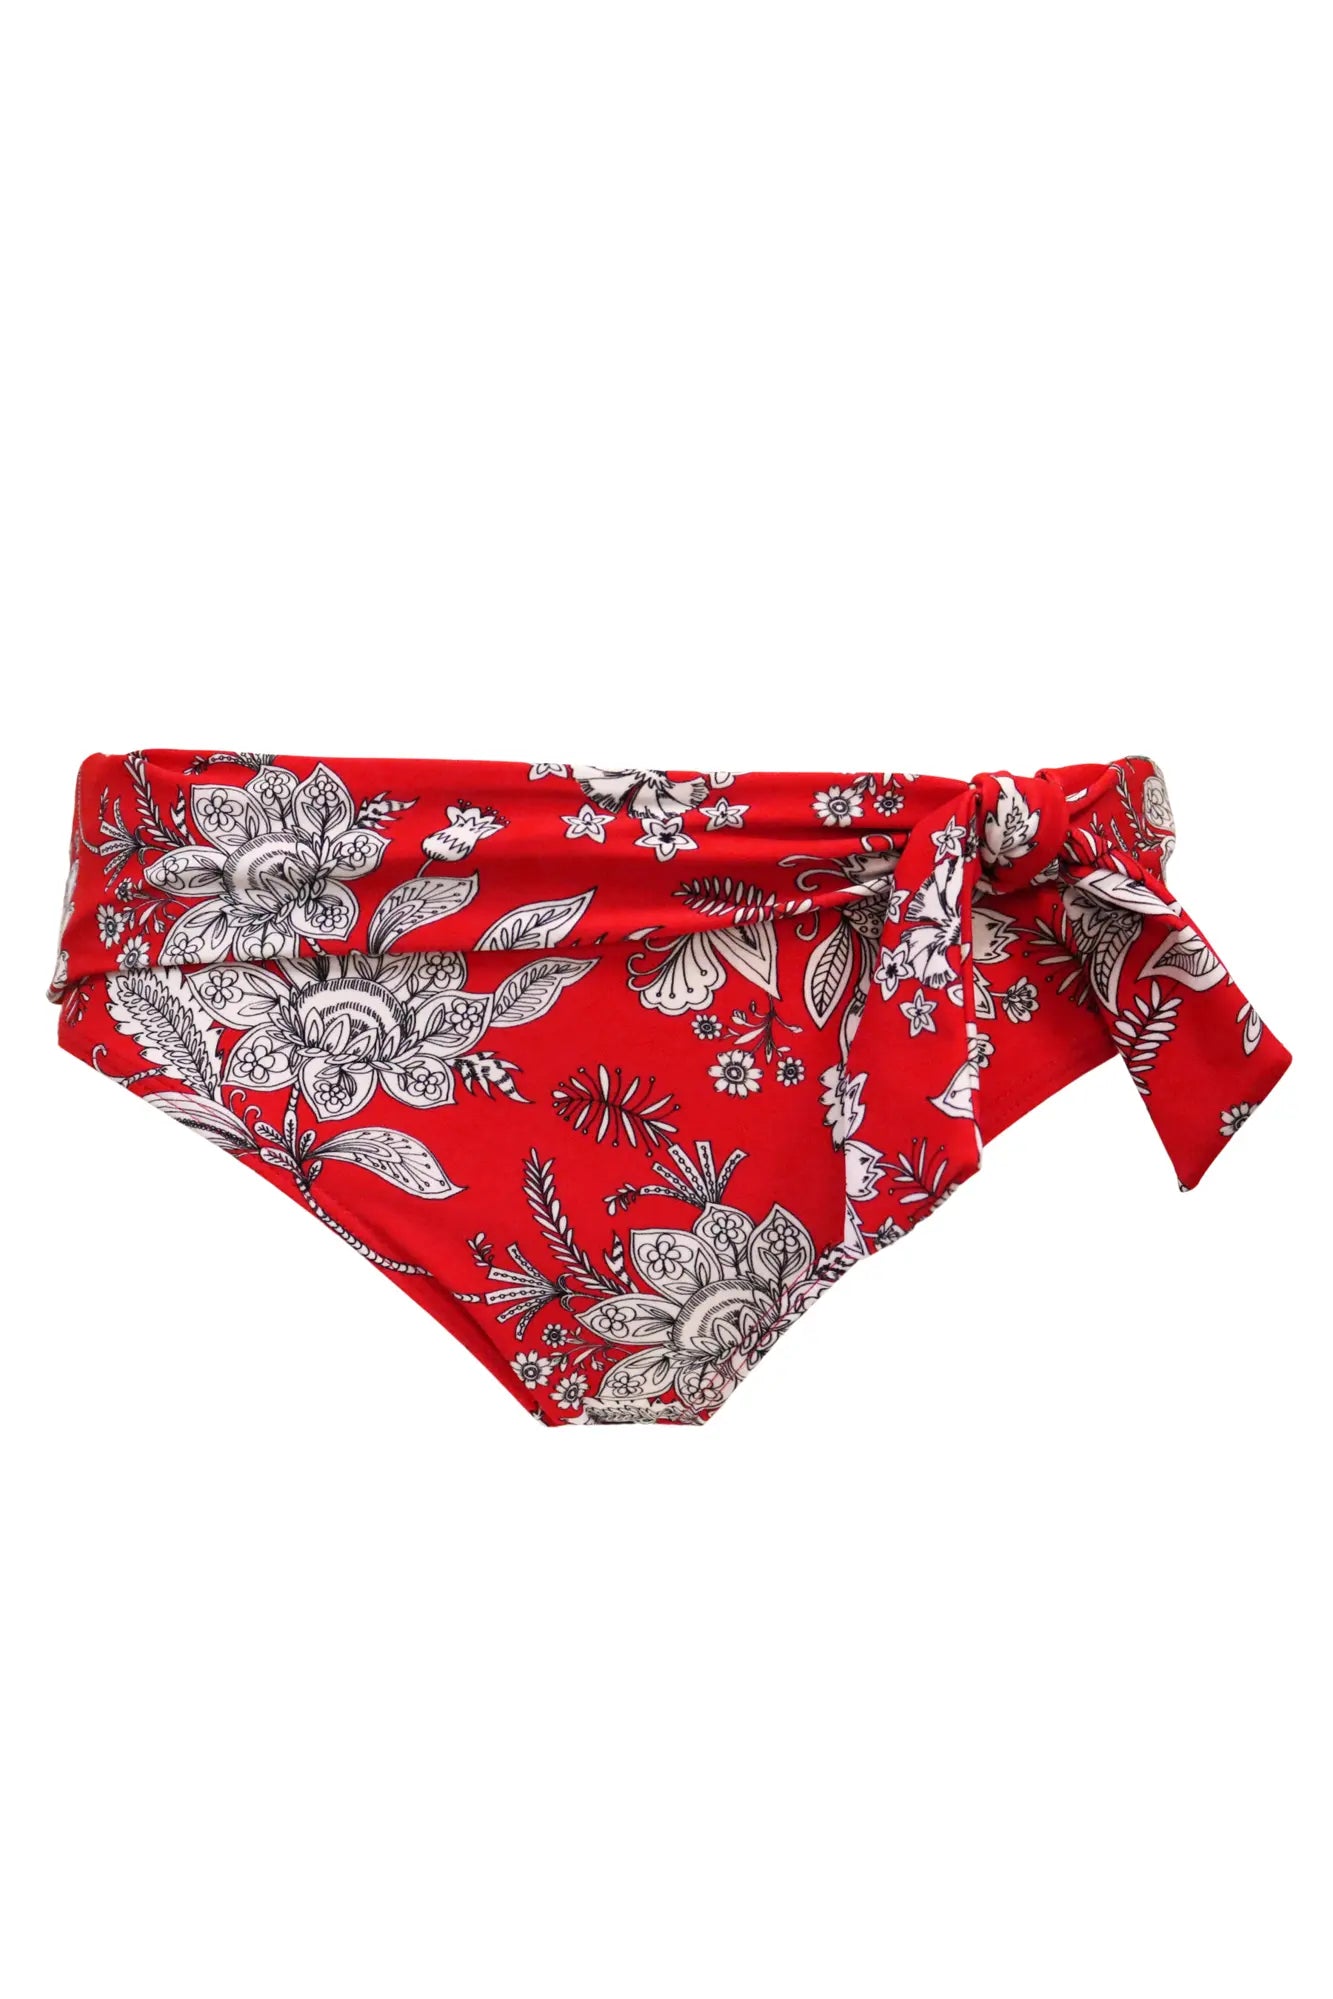 Freedom Tie Foldover Bikini Brief In Red & White - Pour Moi